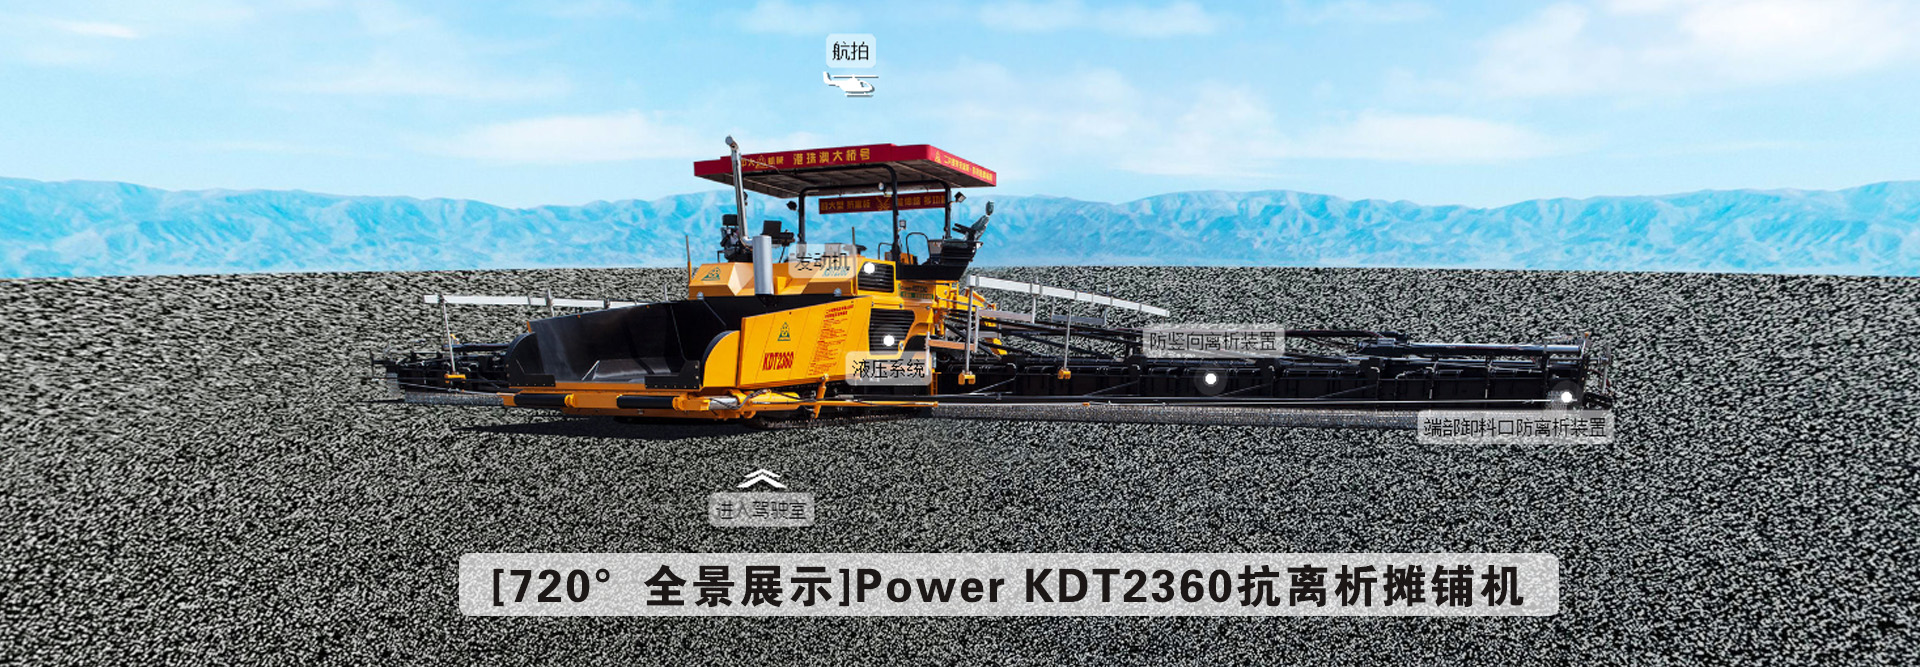 [720°全景展示]Power KDT2360抗離析攤鋪機